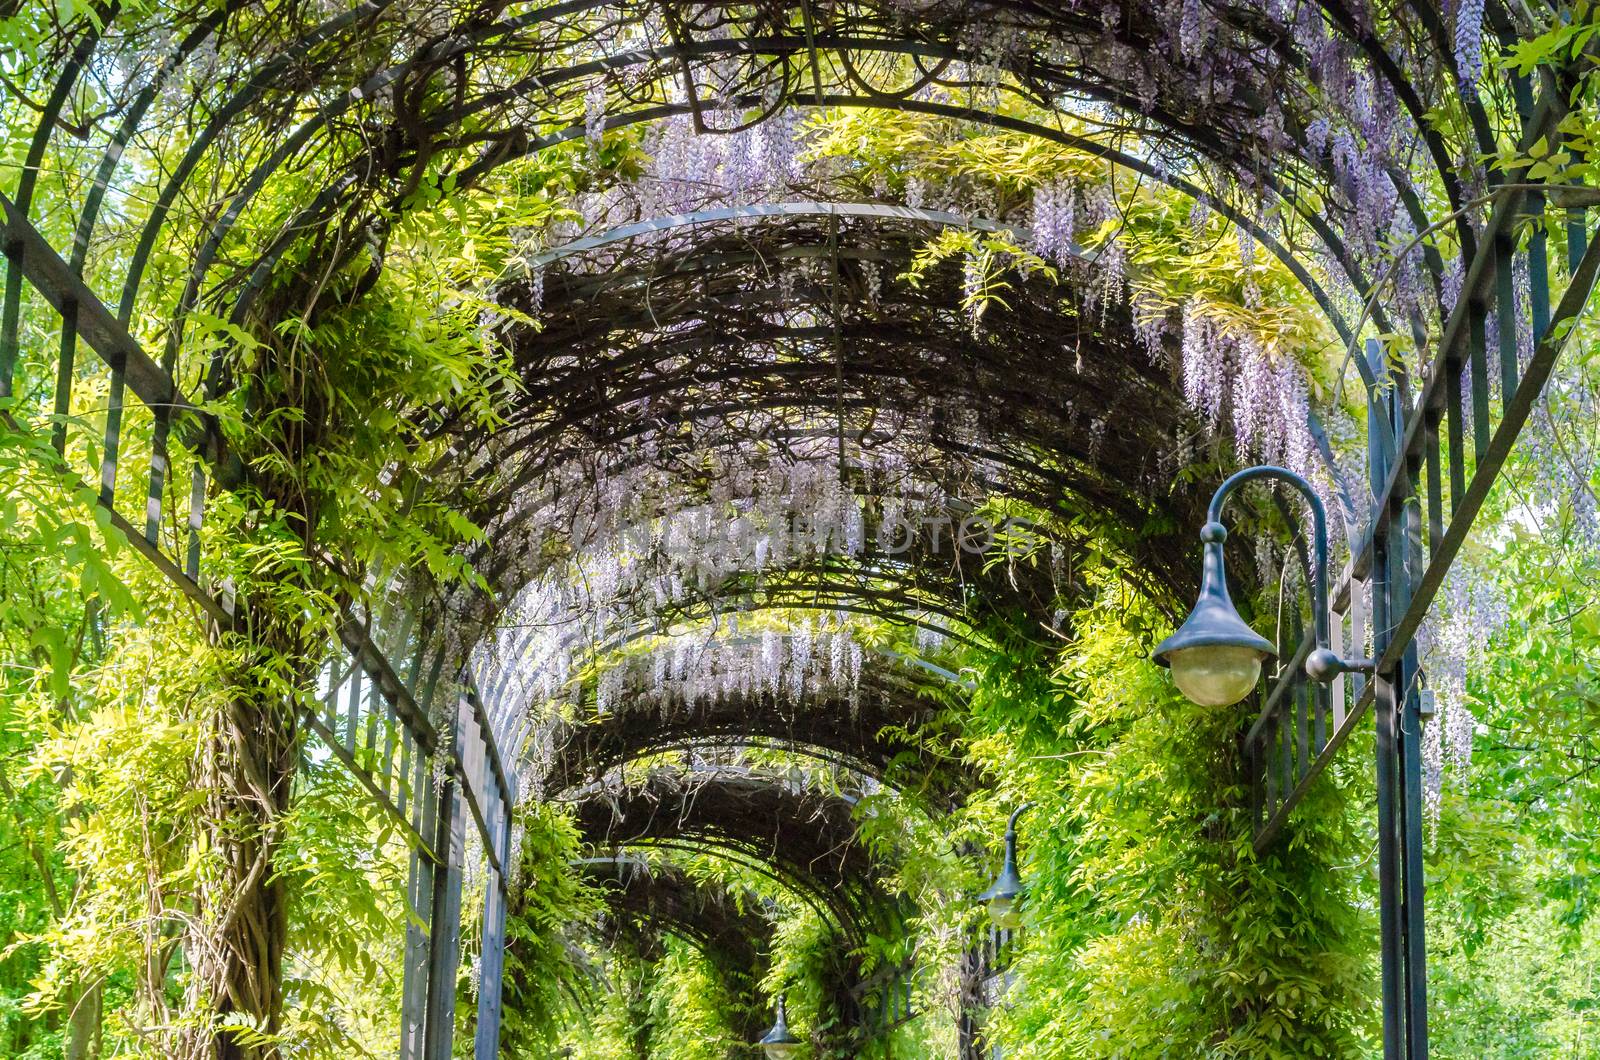 Garden Tunnel by JFsPic